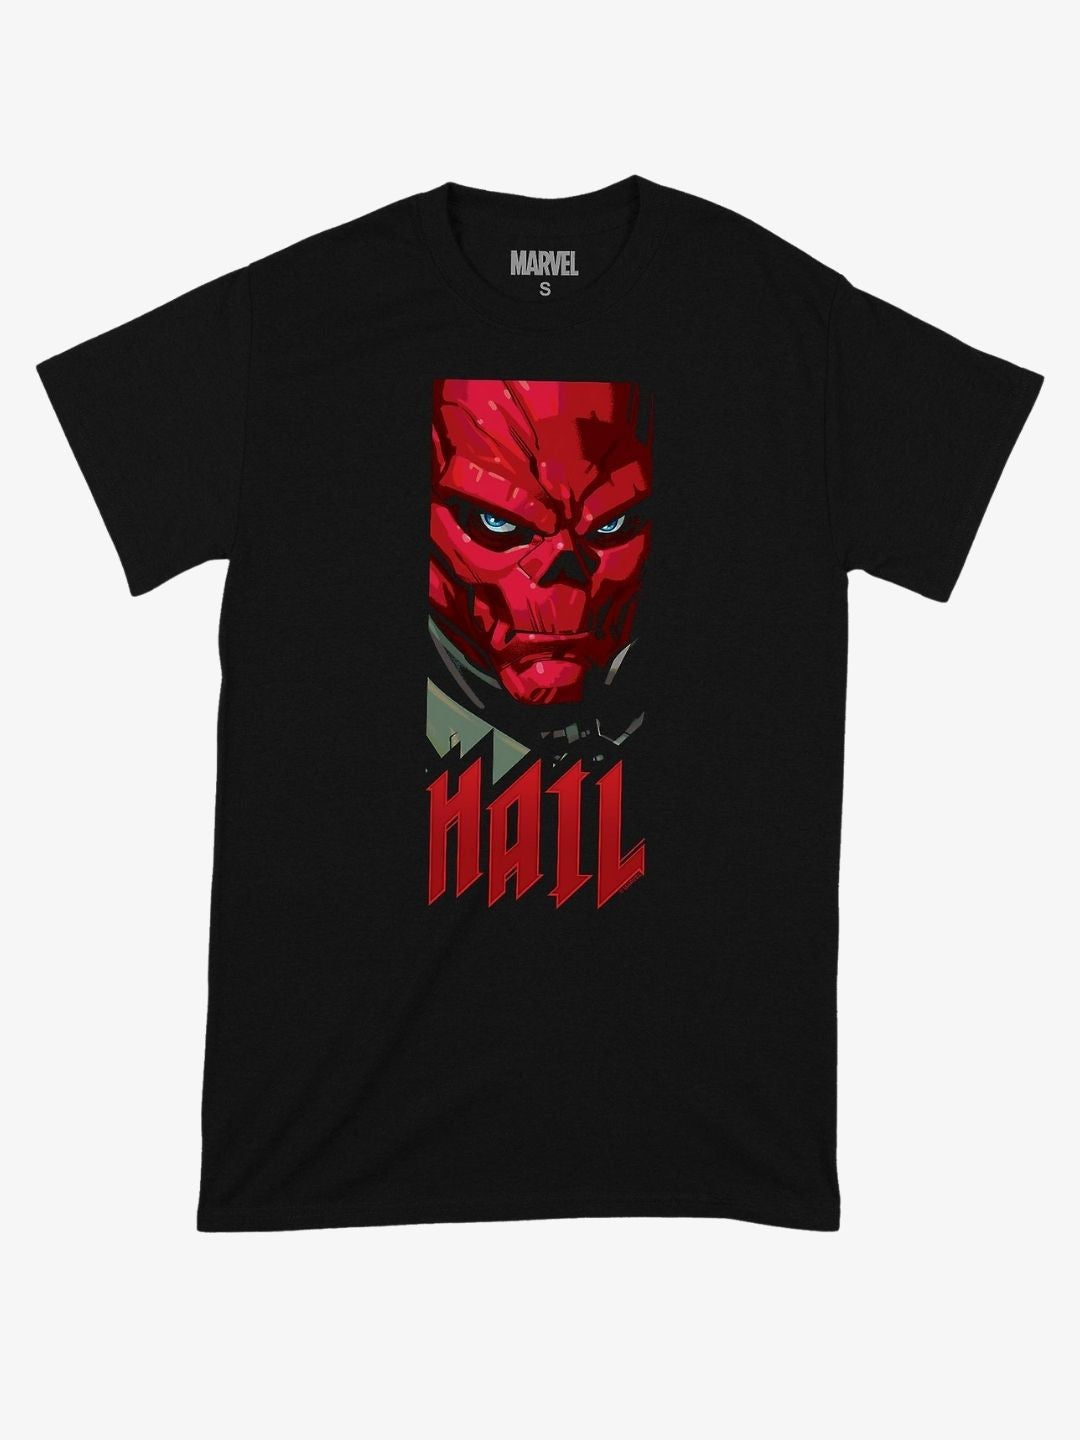 Avengers T-Shirt | Red Skull Hail